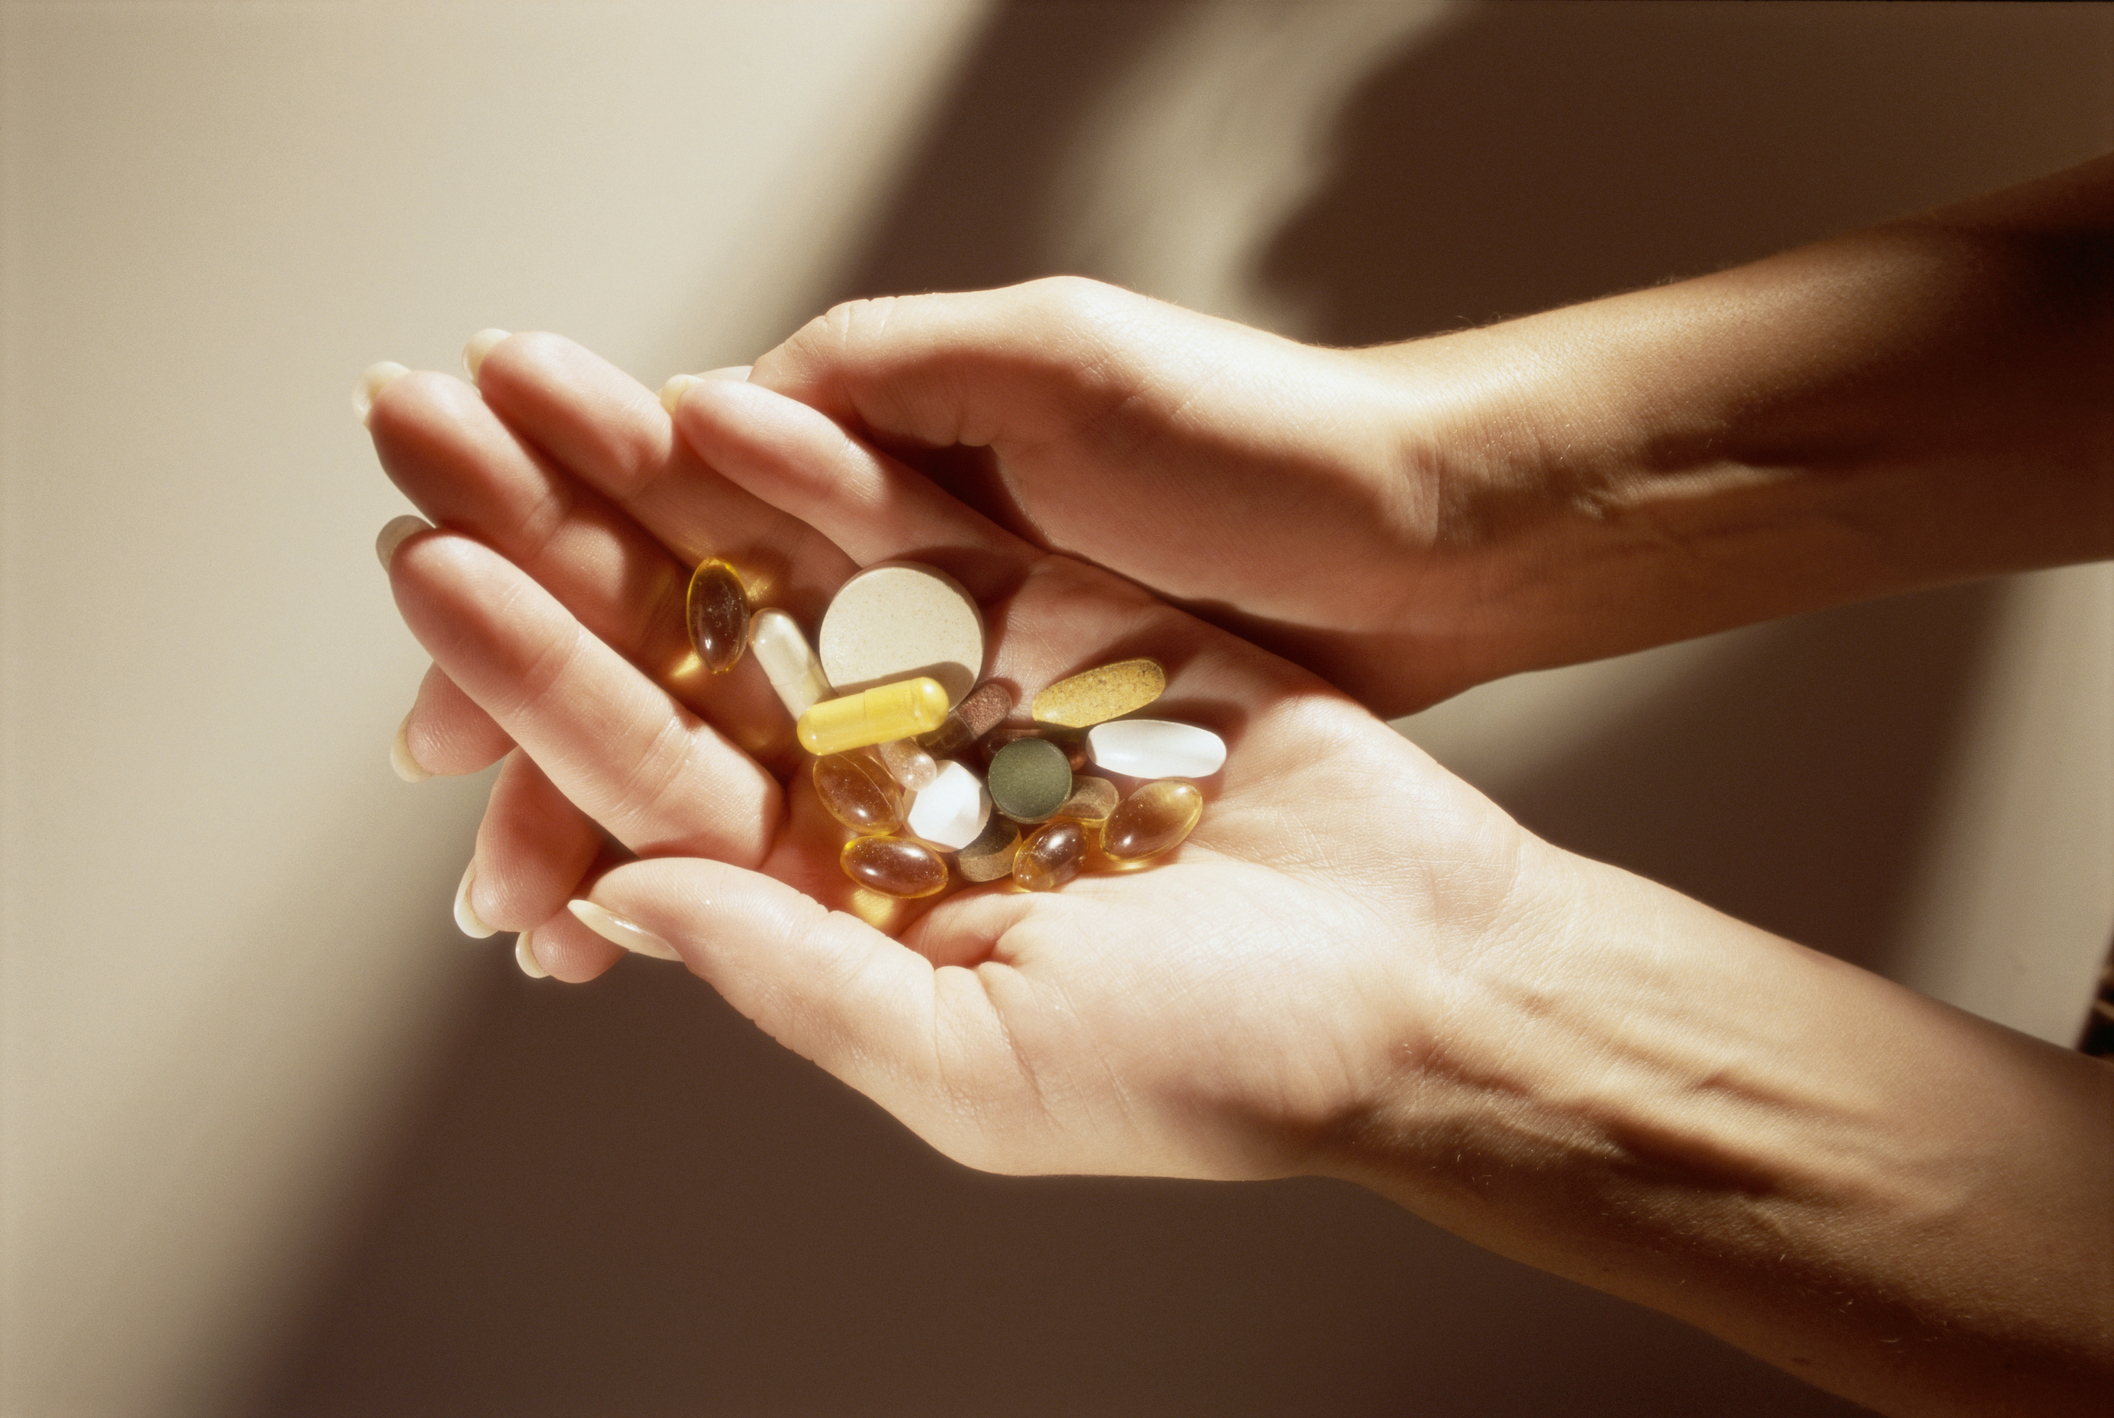 Imagem: pessoa segurando diversos comprimidos nas mãos 